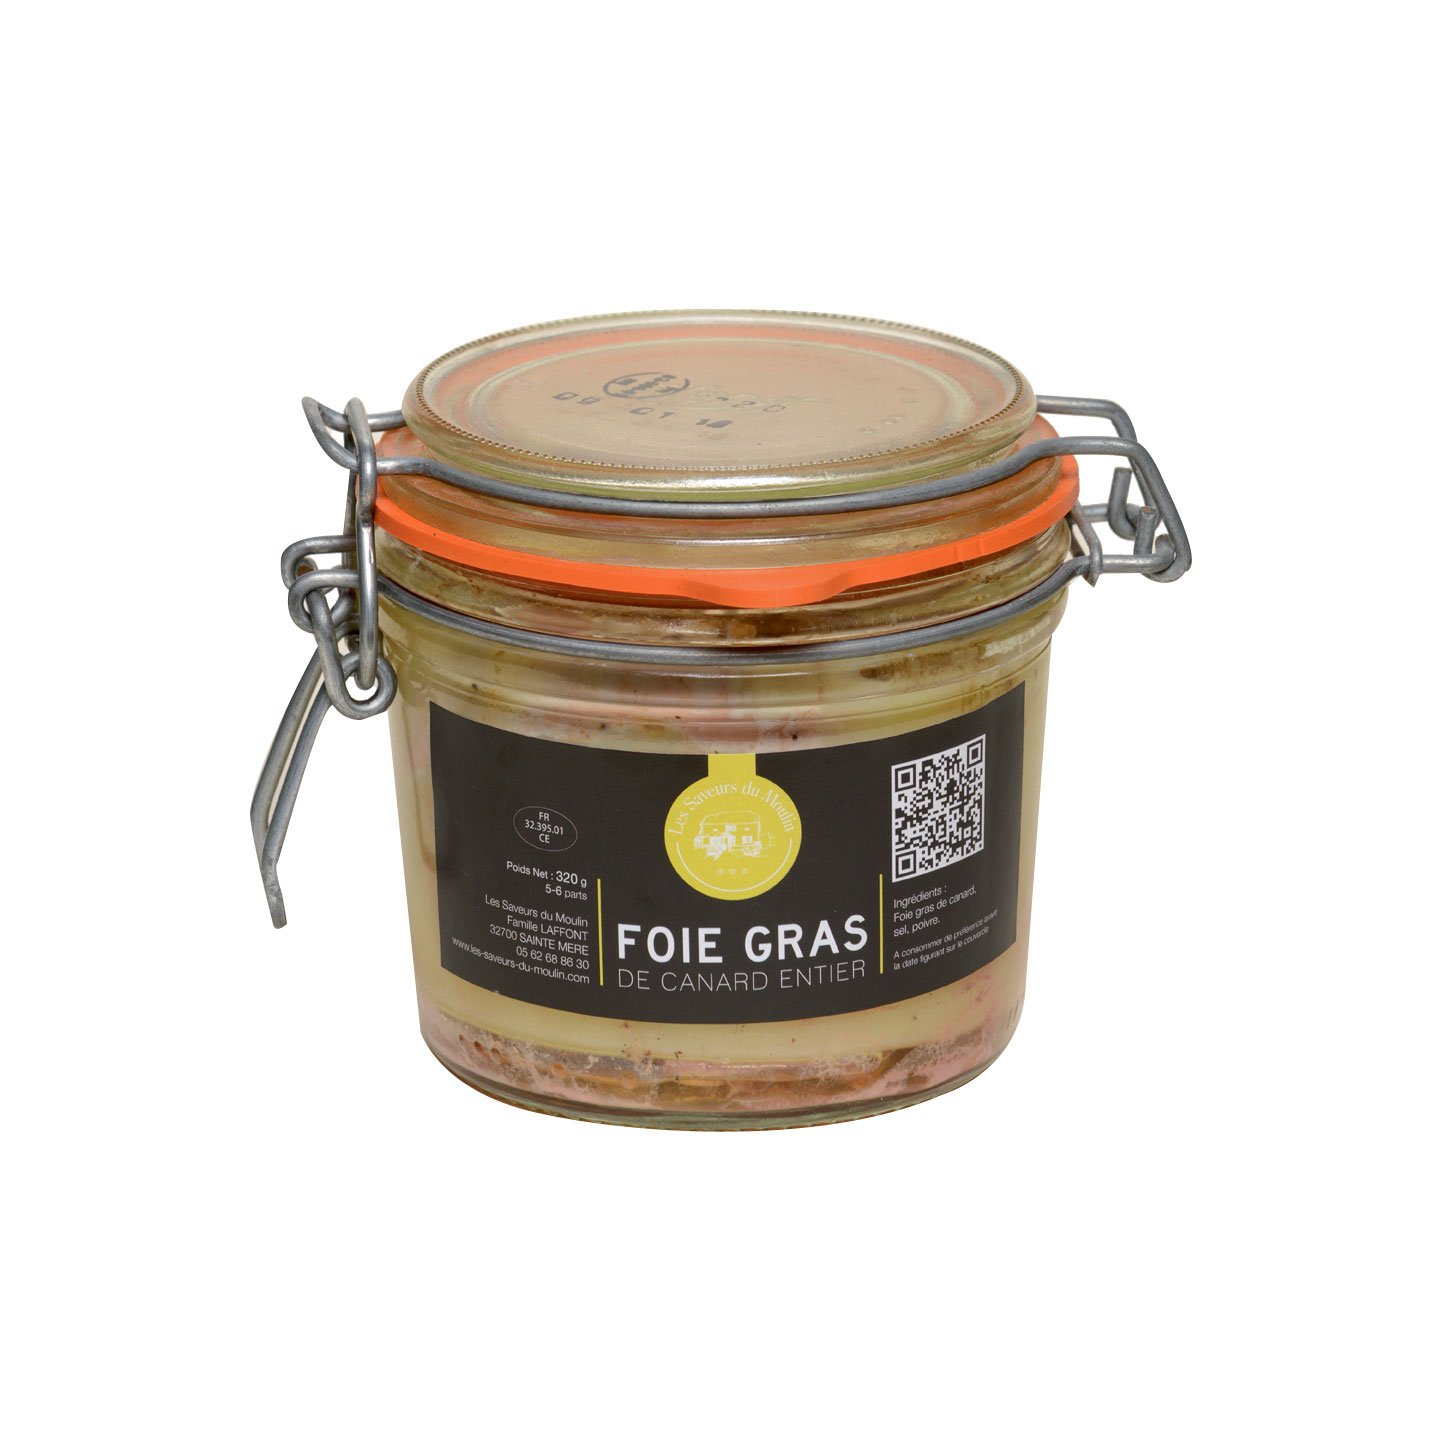 Foie gras de canard entier du sud-ouest en conserve - Maison Montfort